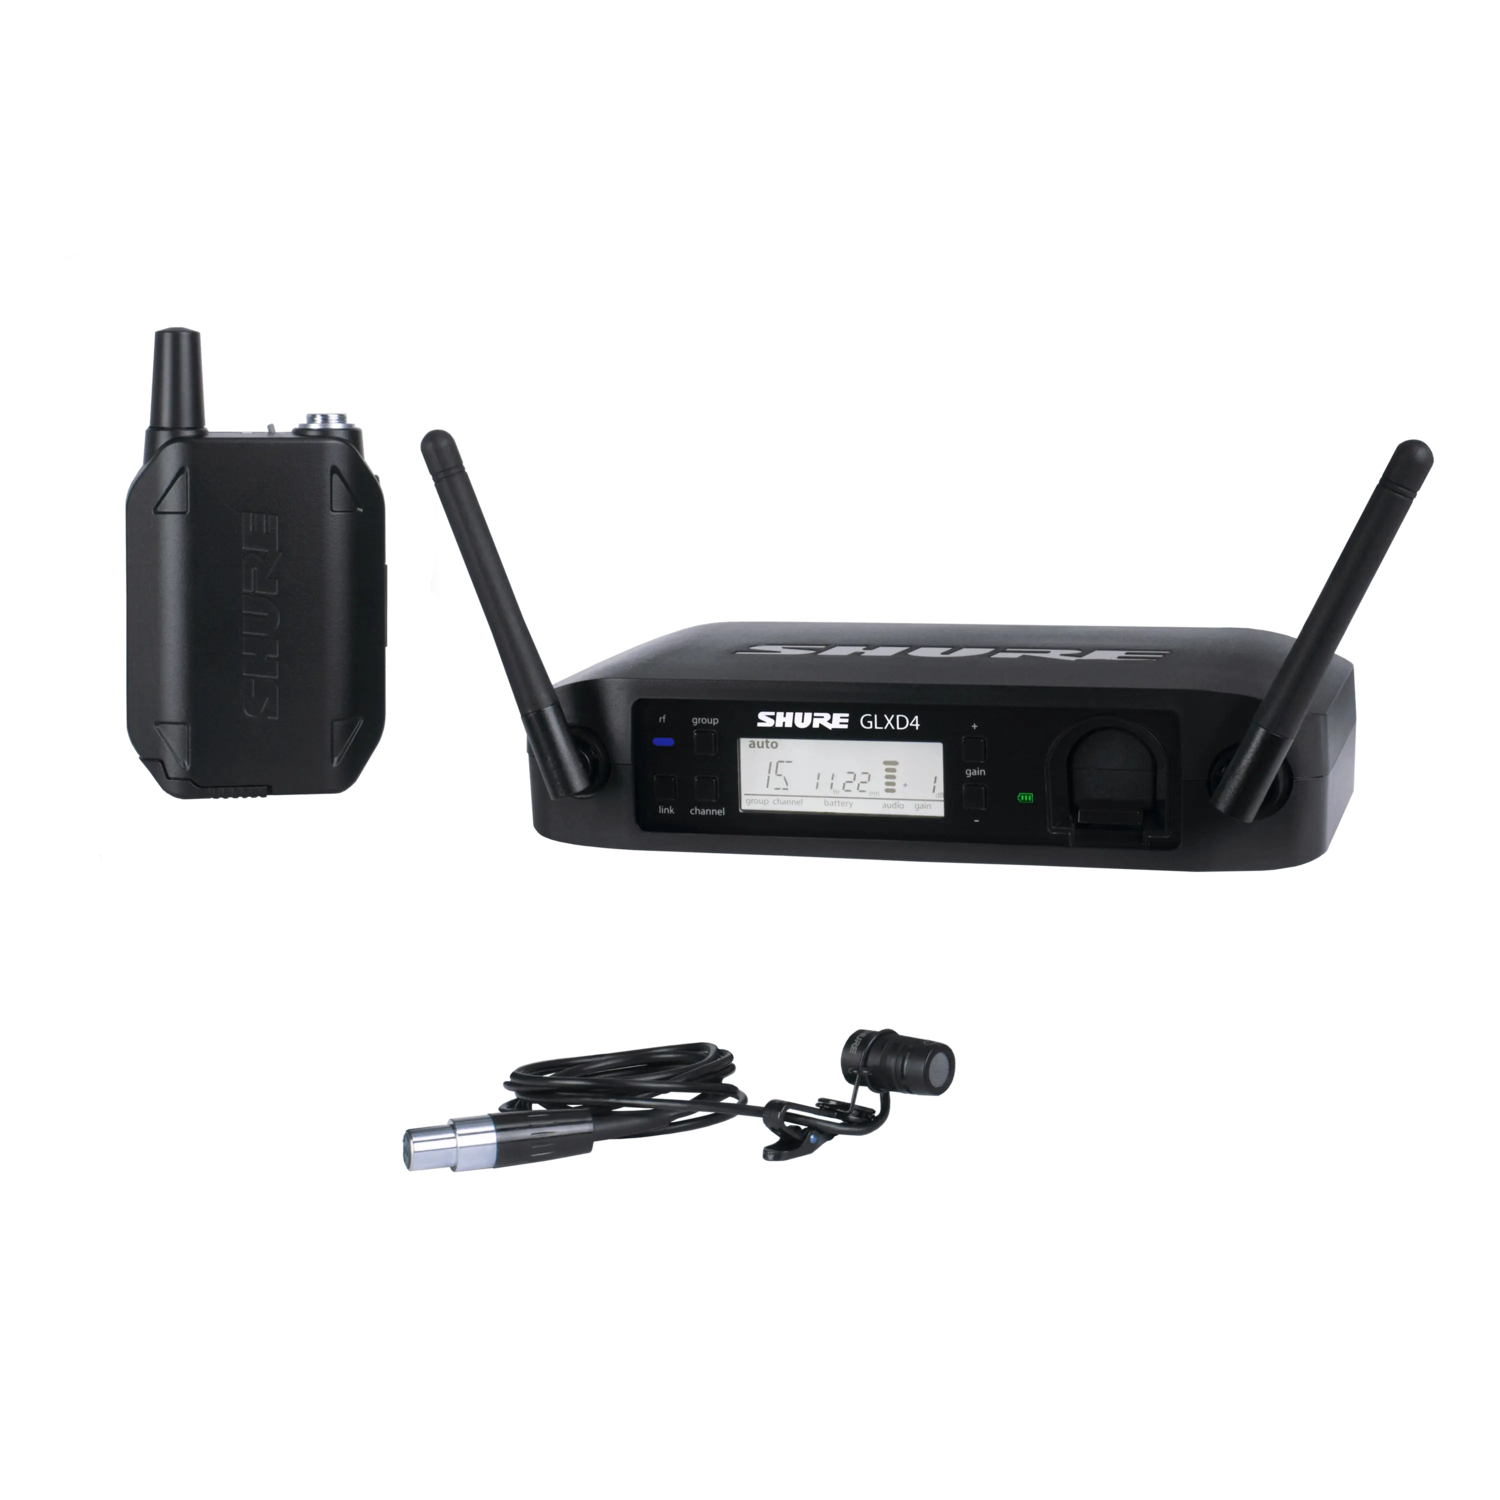 GLXD14/85 - Digital Wireless Presenter System with WL185 